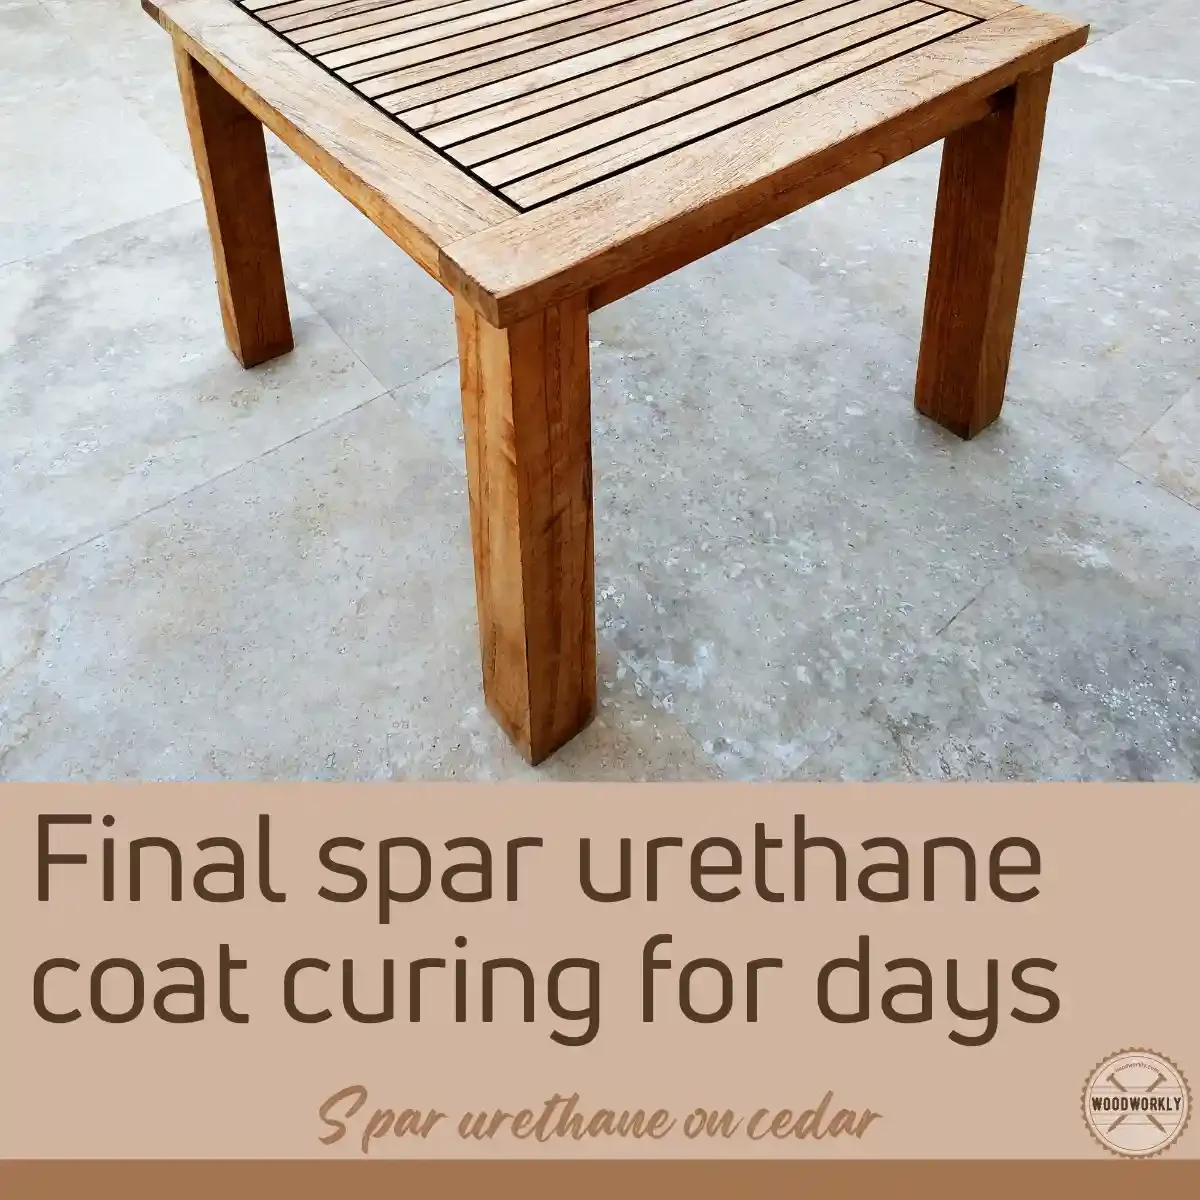 Final spar urethane coat curing for days